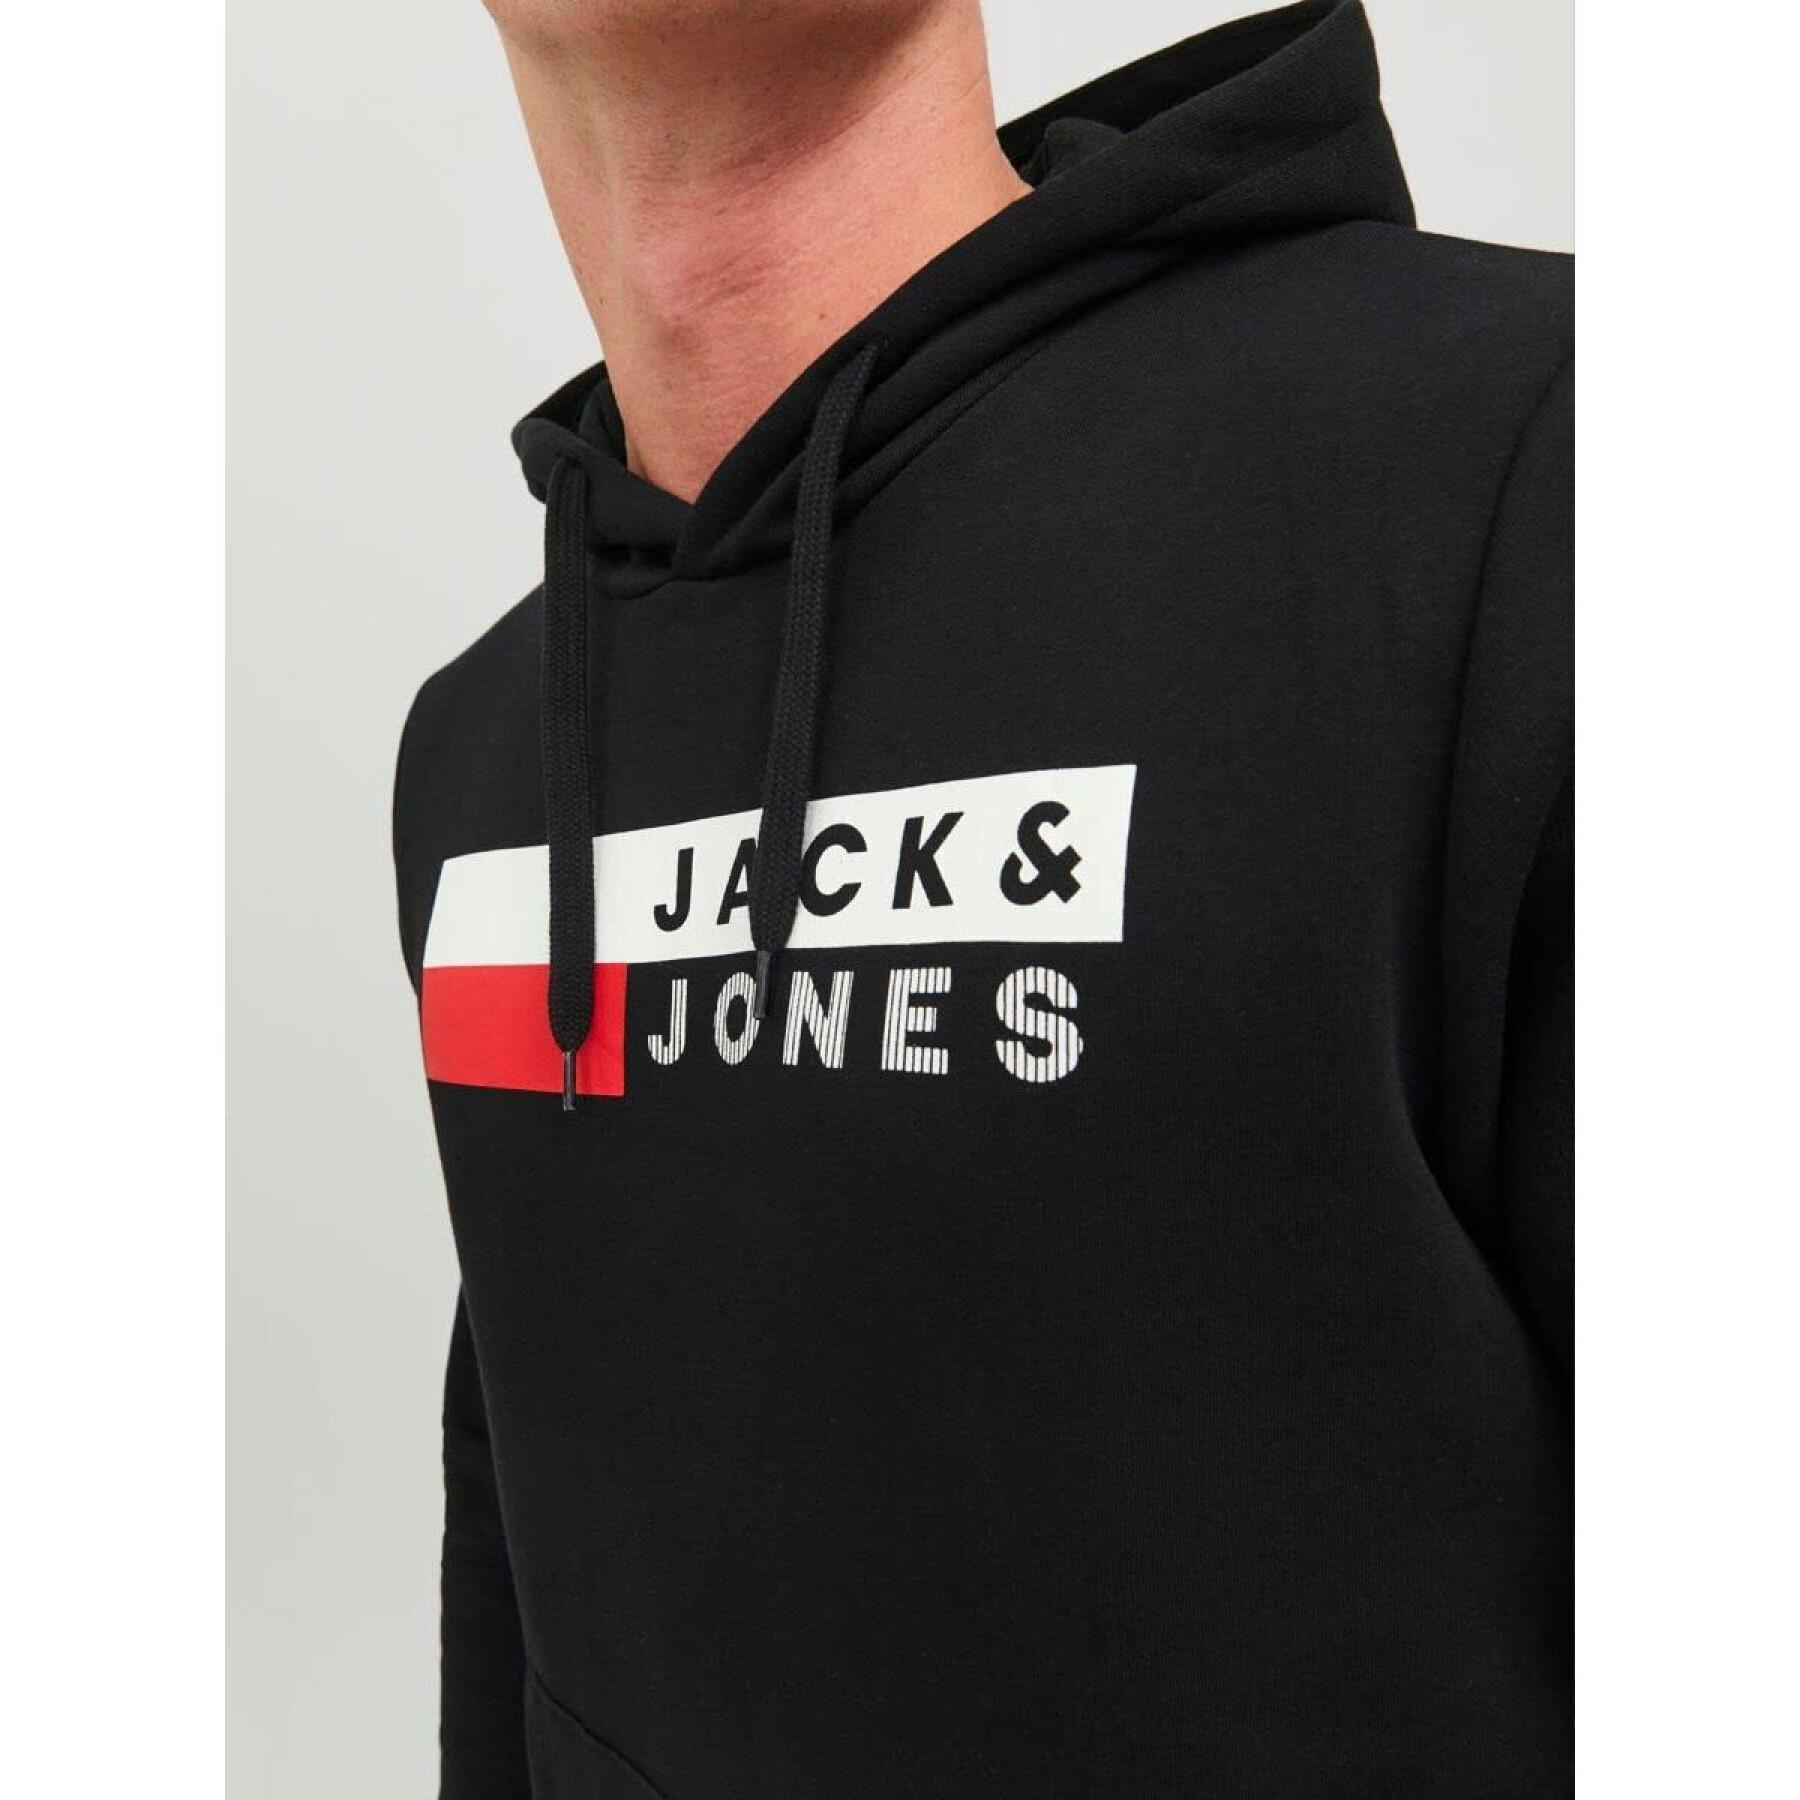 Sweatshirt Jack & Jones con cappuccio Corp Logo